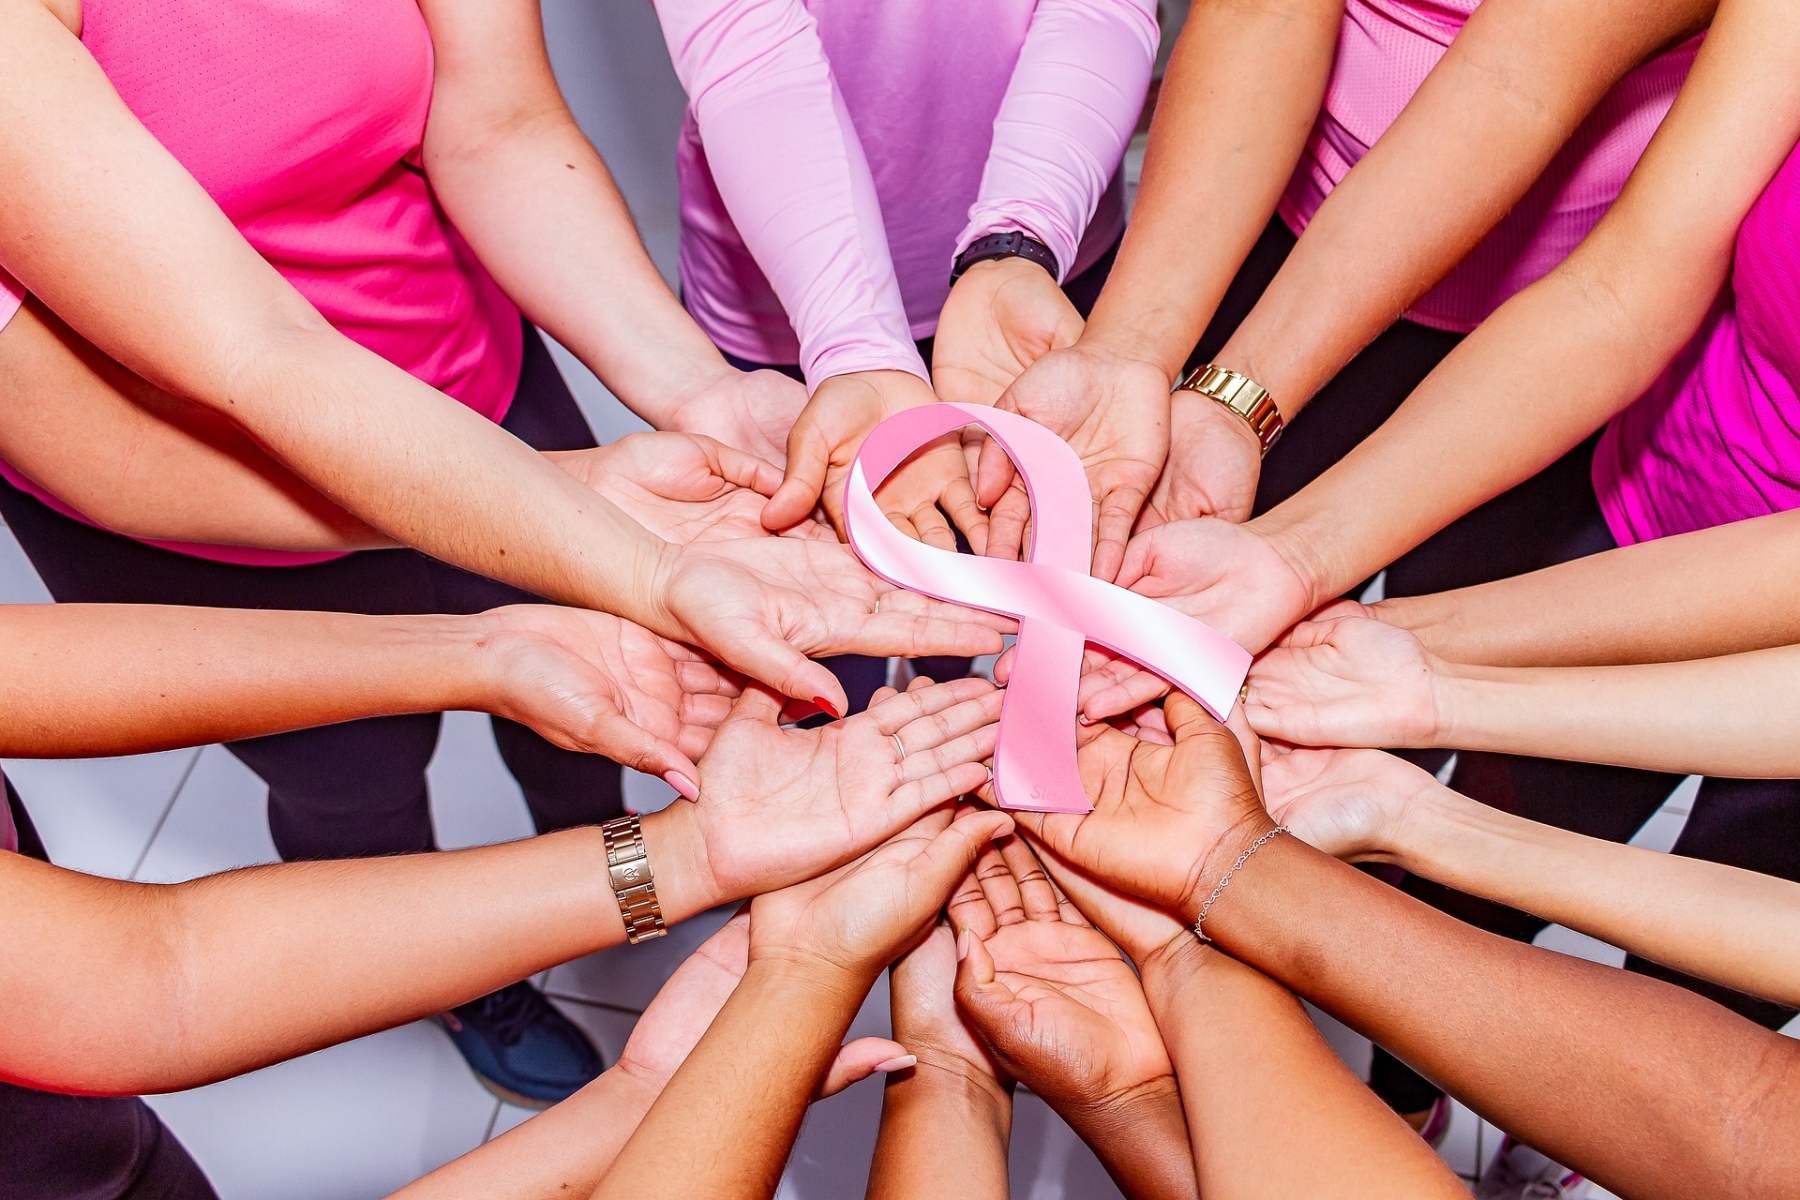 Ξηρά σύκα – Φυσική ασπίδα κατά του καρκίνου του μαστού